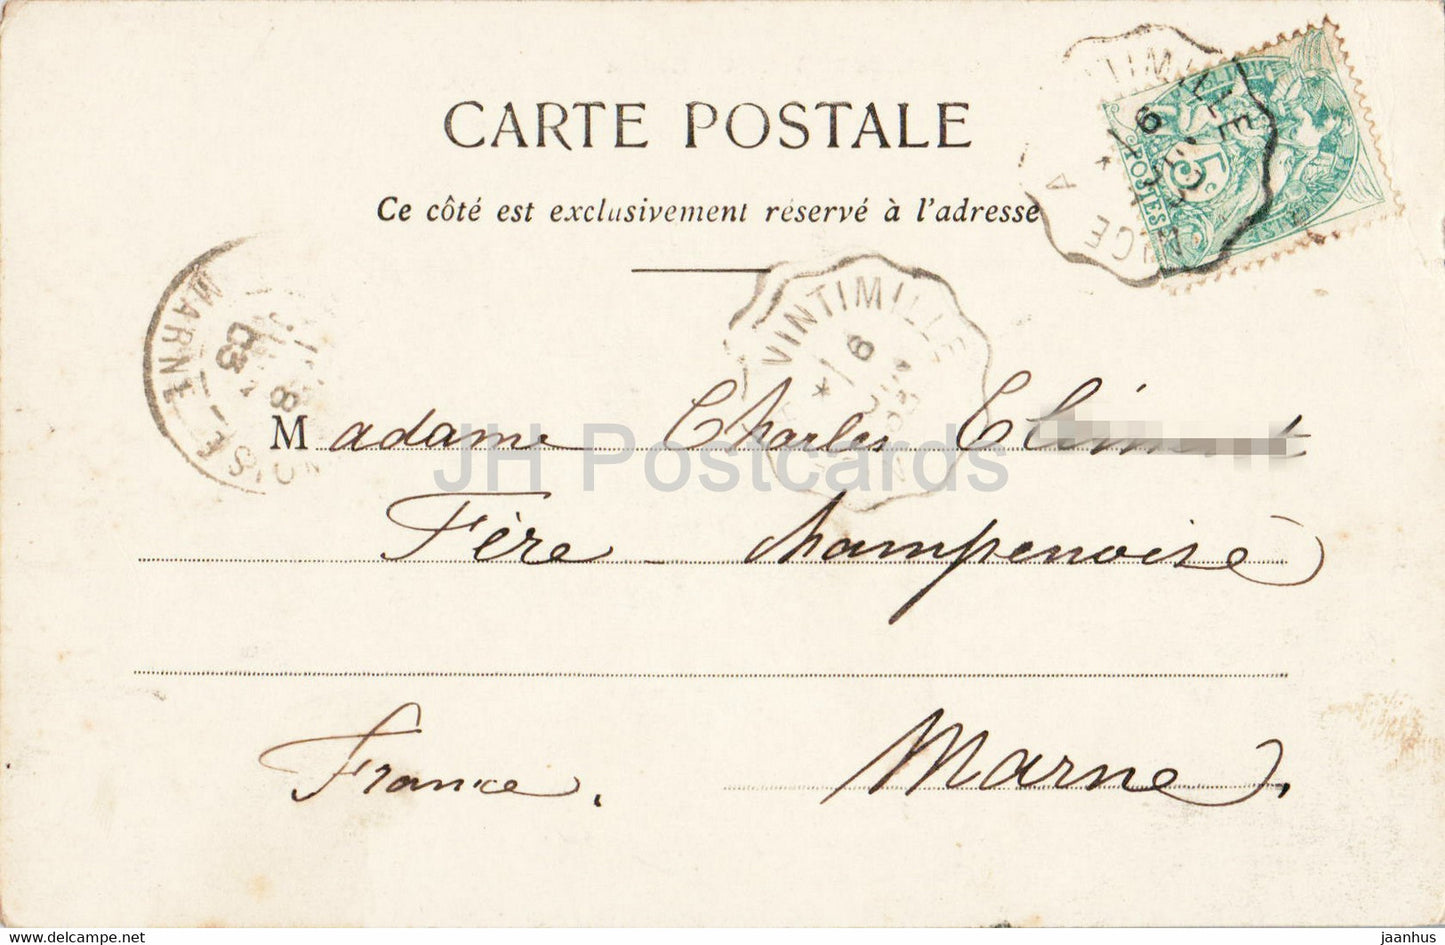 Monaco - Palais du Prince et Tete de Chien - 539 - alte Postkarte - 1903 - Monaco - gebraucht